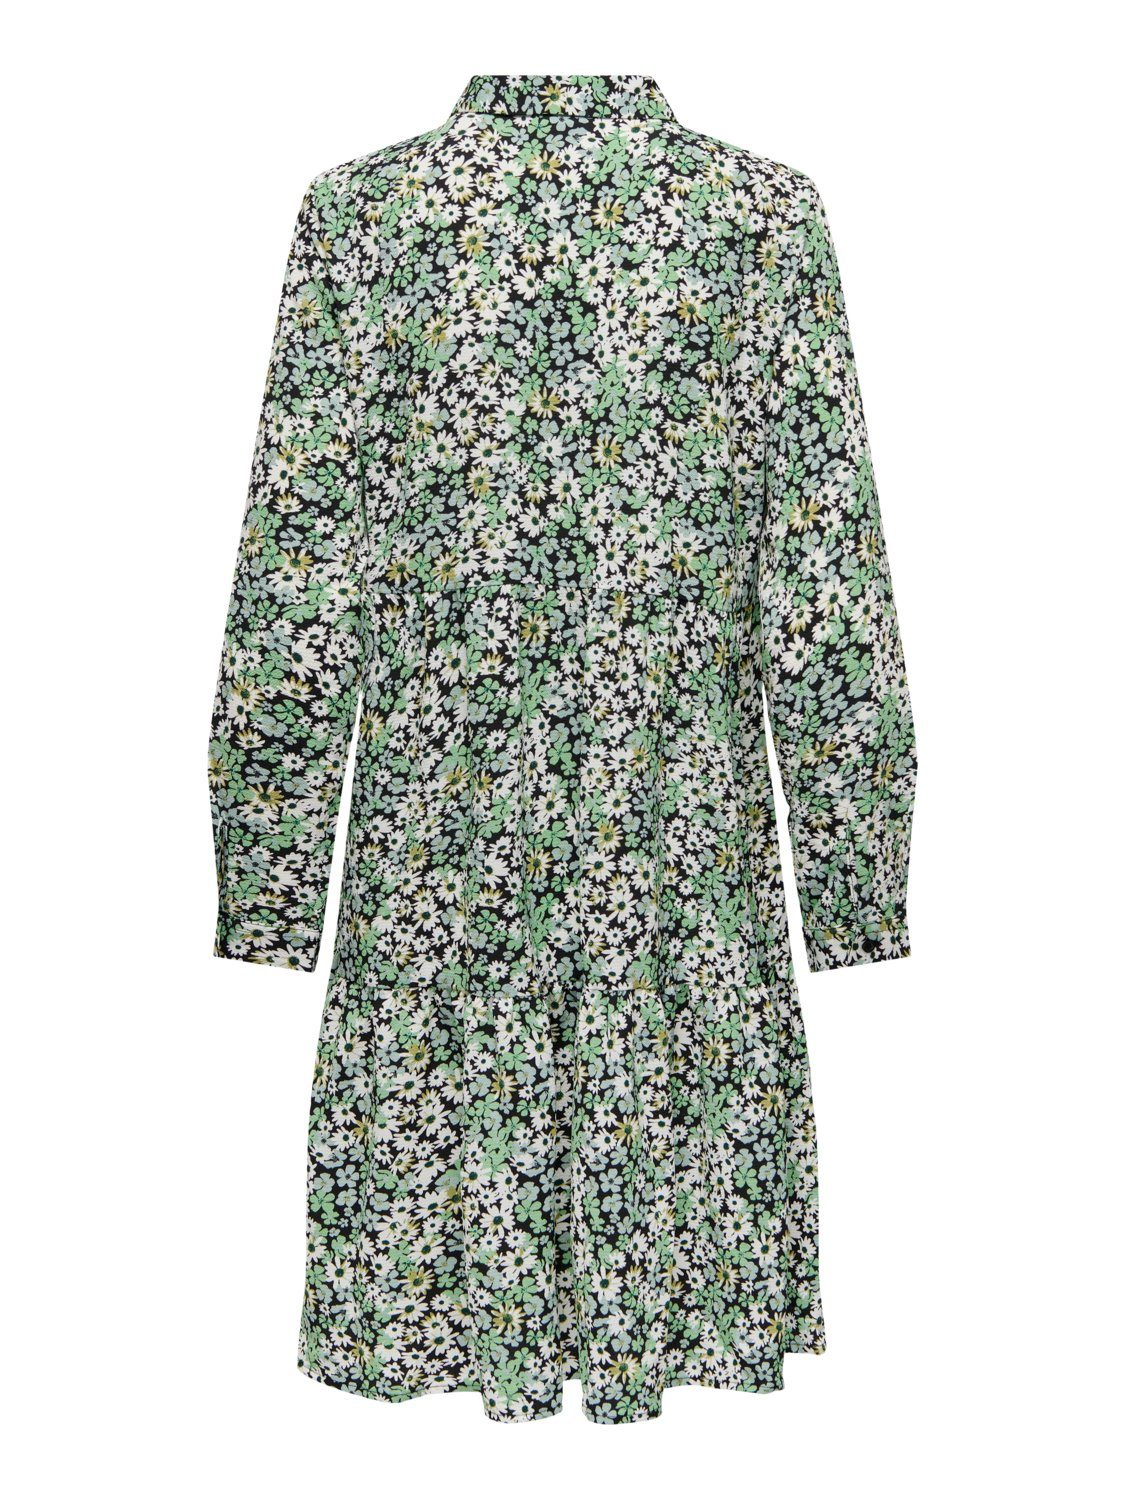 JACQUELINE de 4536 Grün (lang) Kurzes Gemusterte Bluse Kleid Shirtkleid Langarm Tunika in YONG JDYPIPER